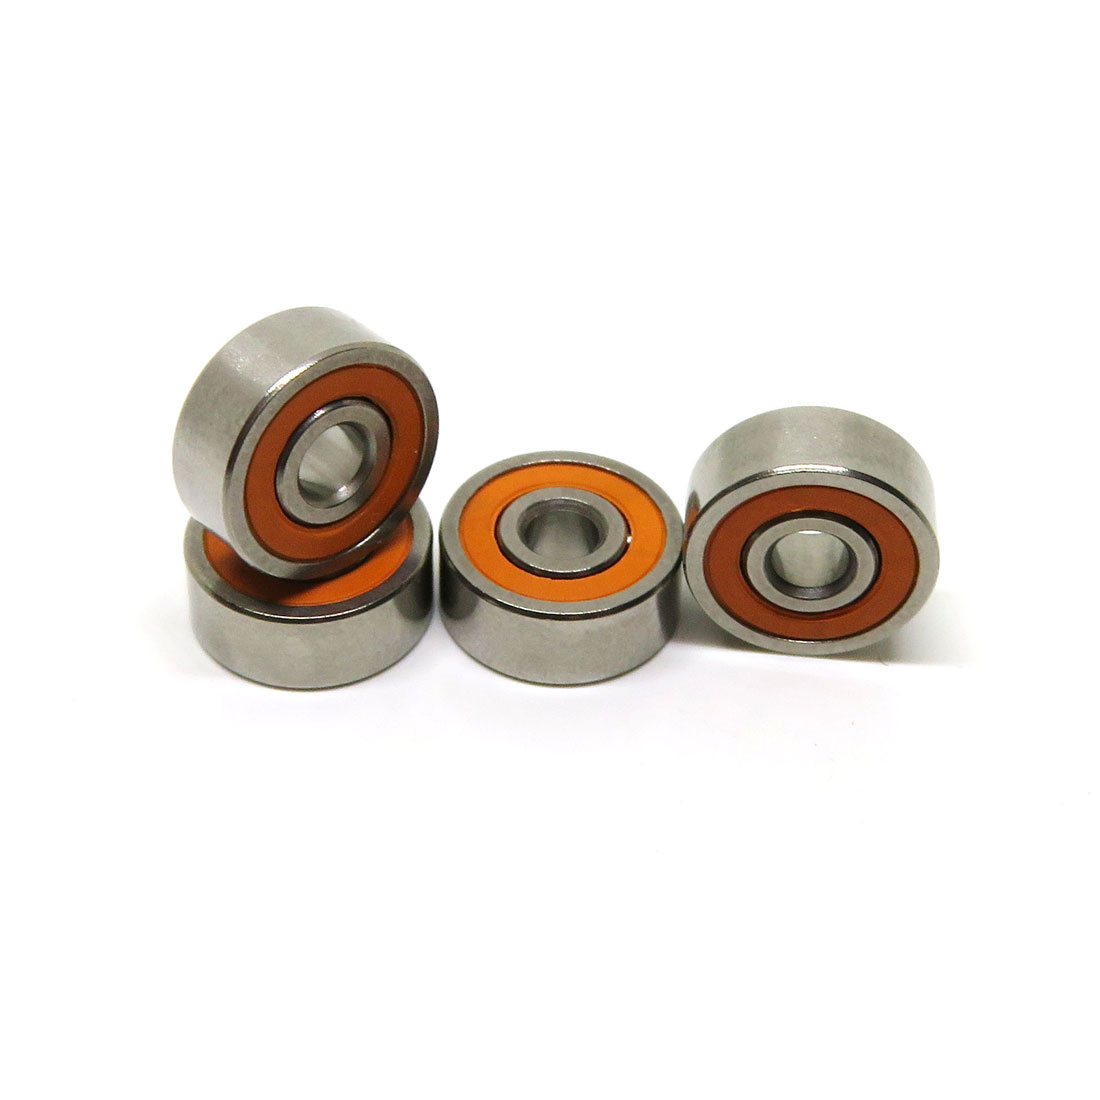 623 3x10x4mm Stainless spool bearings kit hybrid ball bearings abec 7 ceramic bearings for reels.jpg